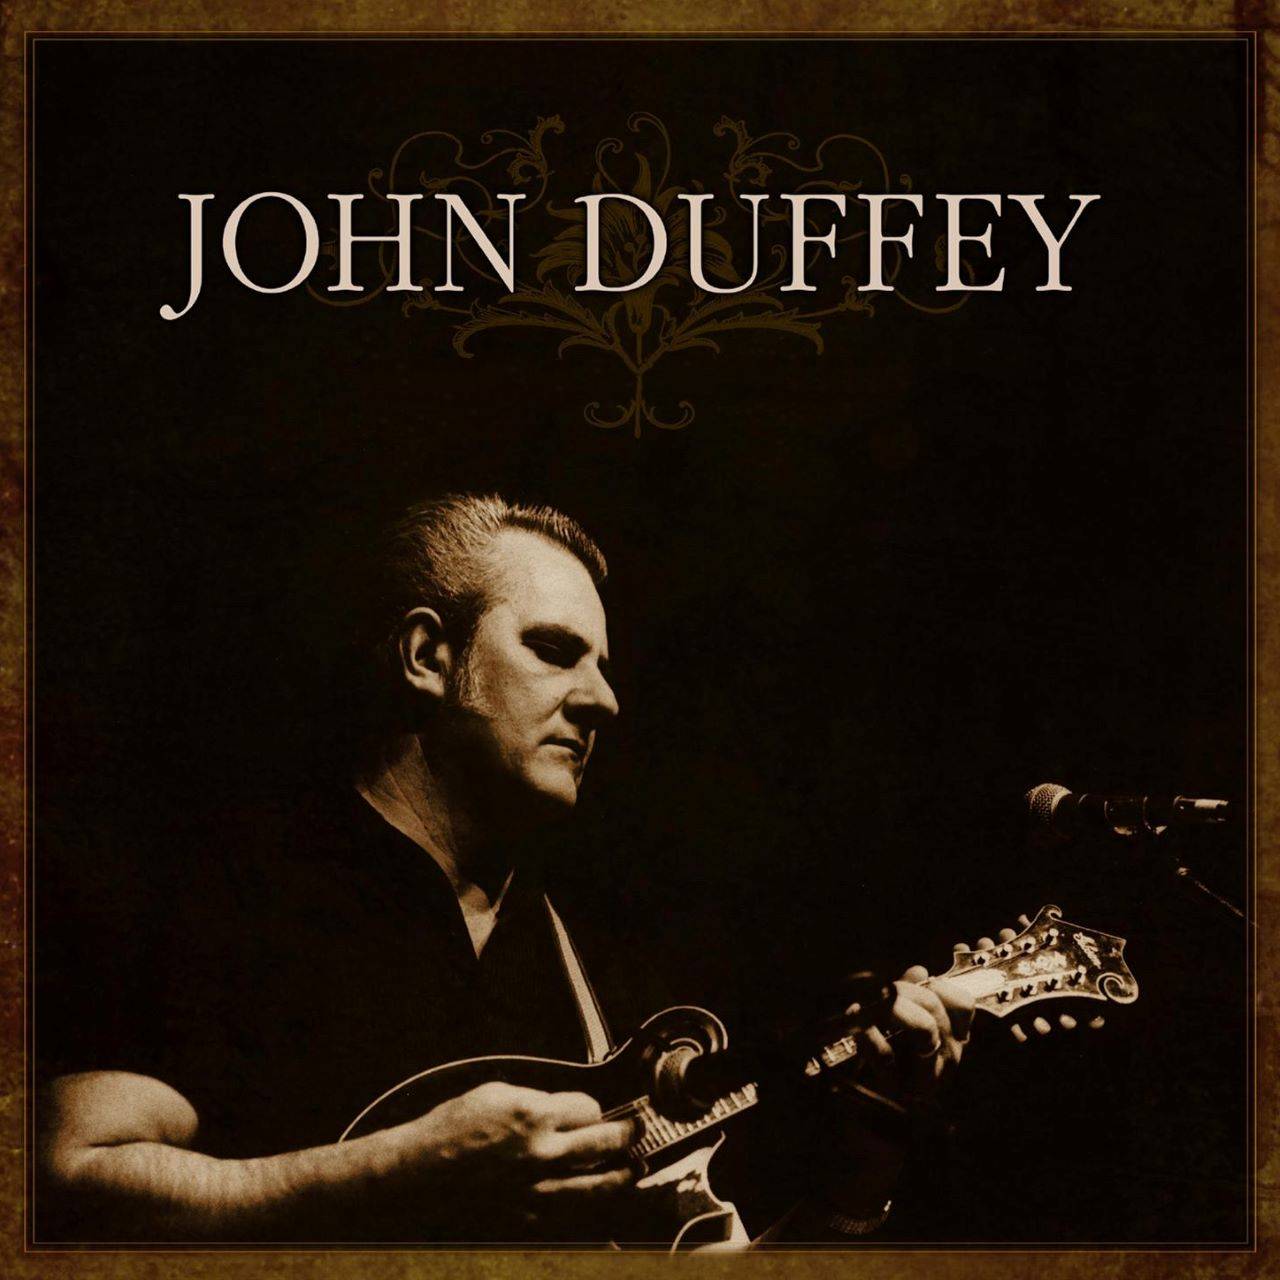 John Duffey